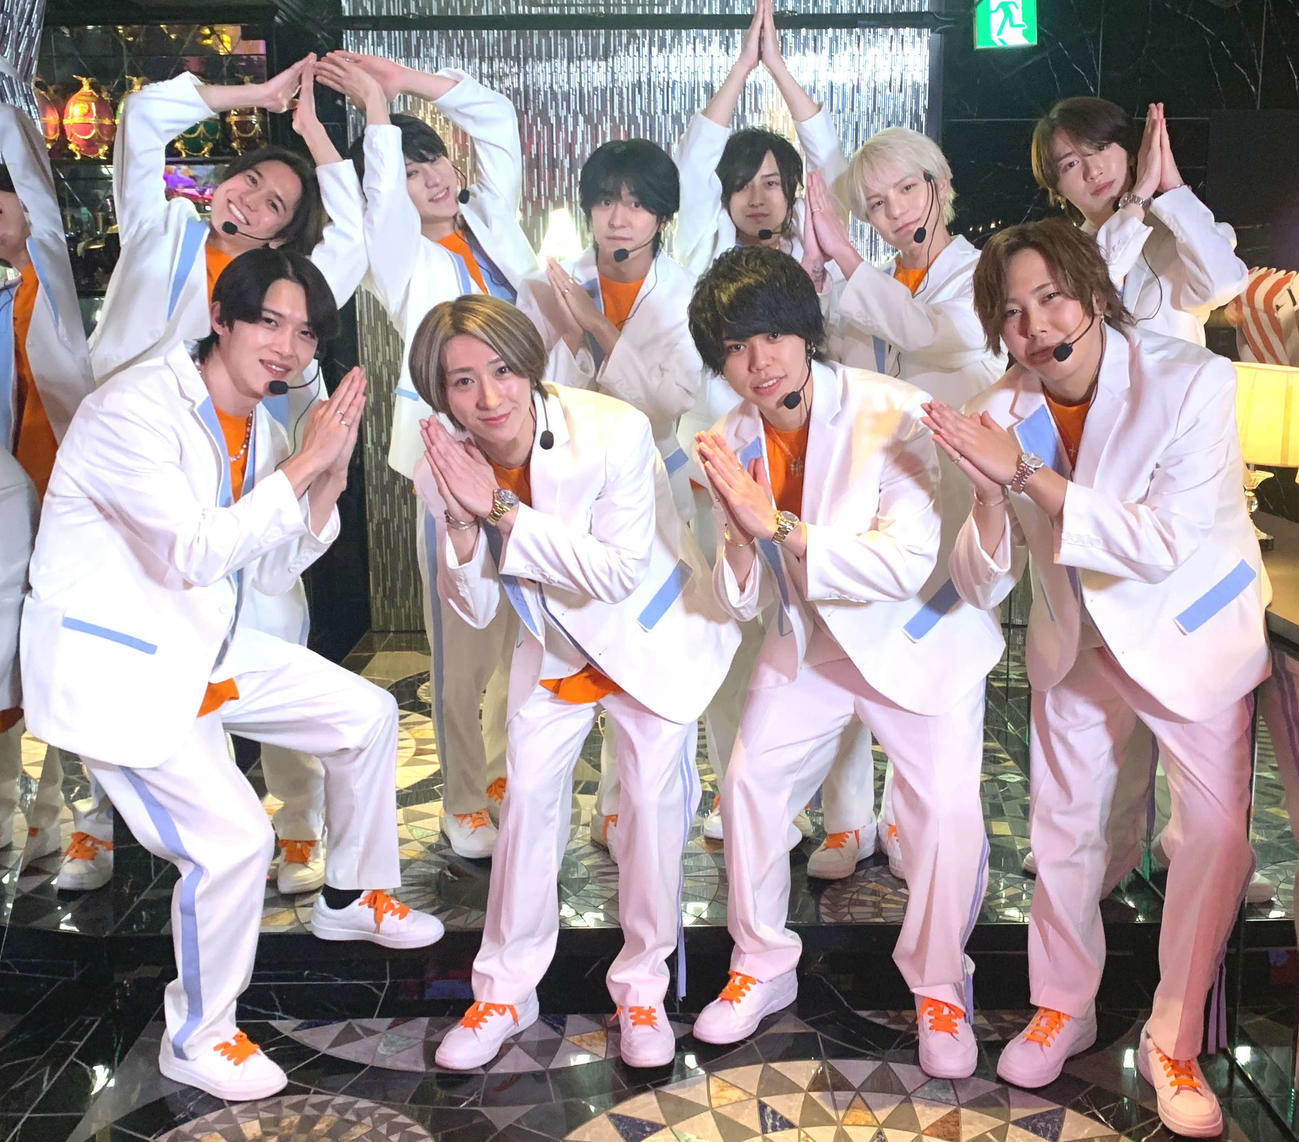 デビュー曲「Higher Higher」の振り付けにも入っている竹の子ニョッキポーズを決める新宿・歌舞伎町のホストで結成したアイドルグループ、KG9のメンバー。上段左からKEITY、KONAN、AI、J、UTA、KOUTASO、下段左からAO、DAIYA、NEO、LEO（撮影・松尾幸之介）